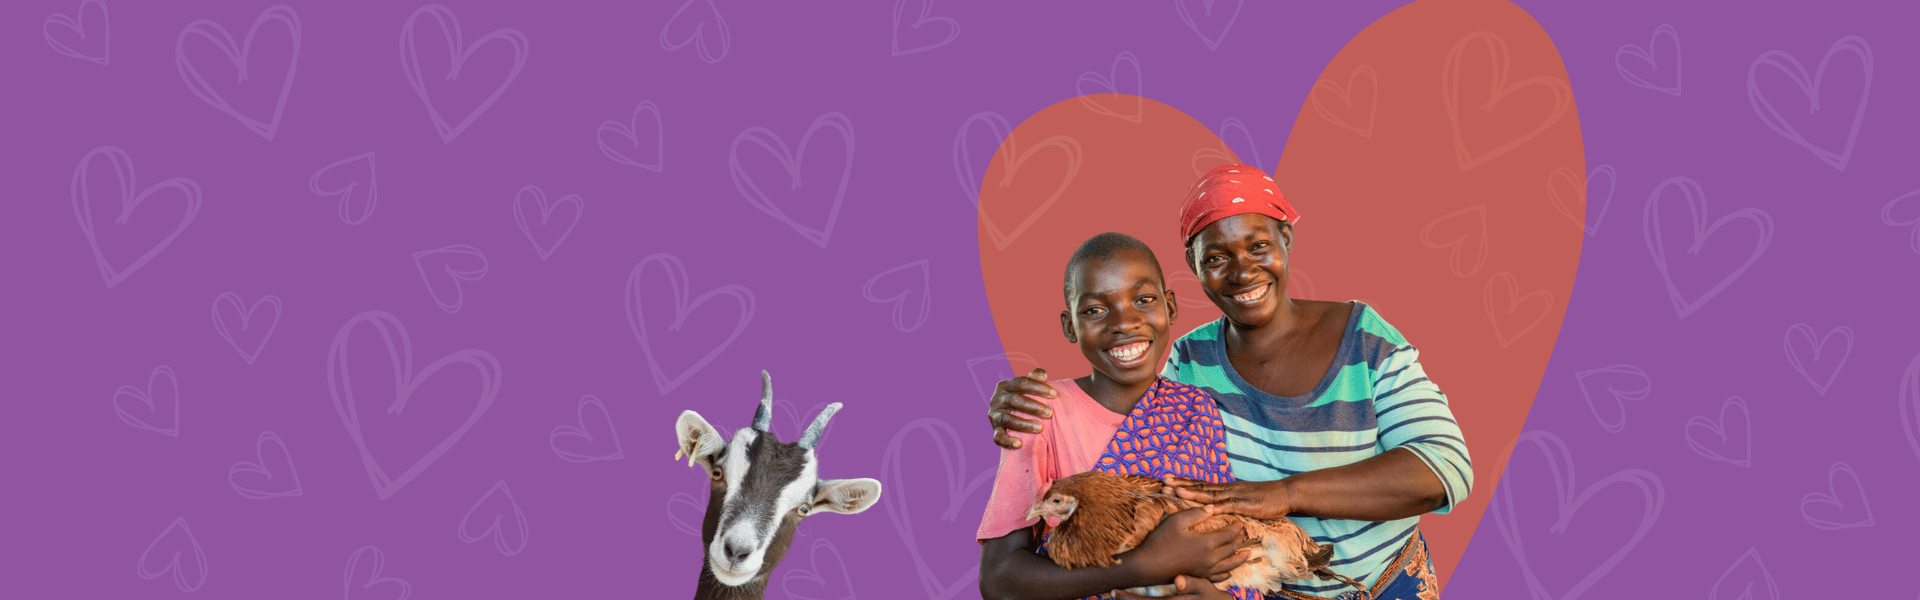 Moederdagcadeau: Een foto van een afrikaanse moeder die haar dochter vasthoudt, die een kip vasthoudt. Onderaan de afbeelding kijkt een geitje de hoek om.